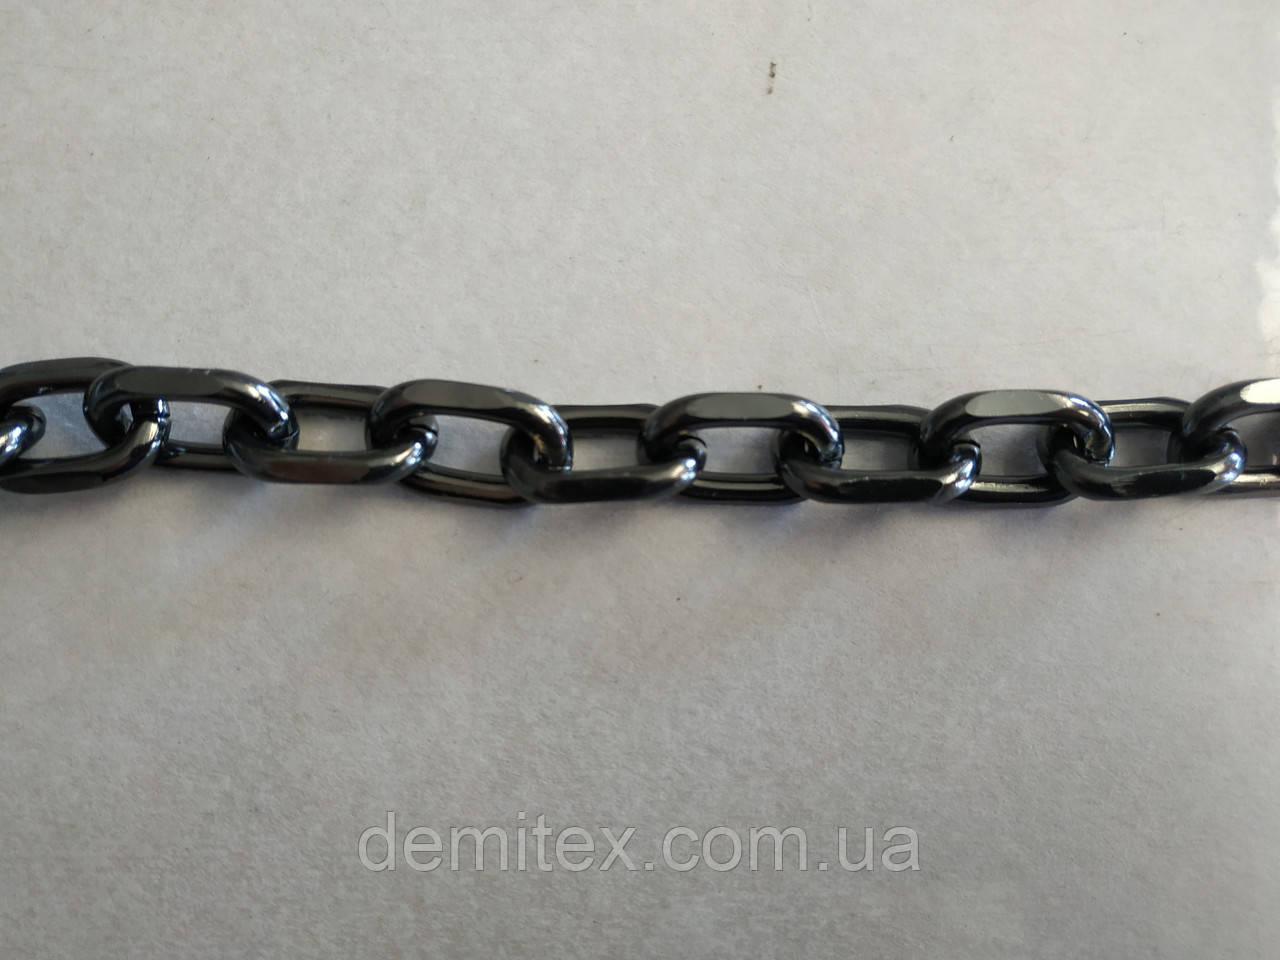 Ланцюжок сумковий якорний алюмінієвий чорний нікель ширина зовнішній 22 мм, висота зовнішня 14 мм, товщина 4 мм